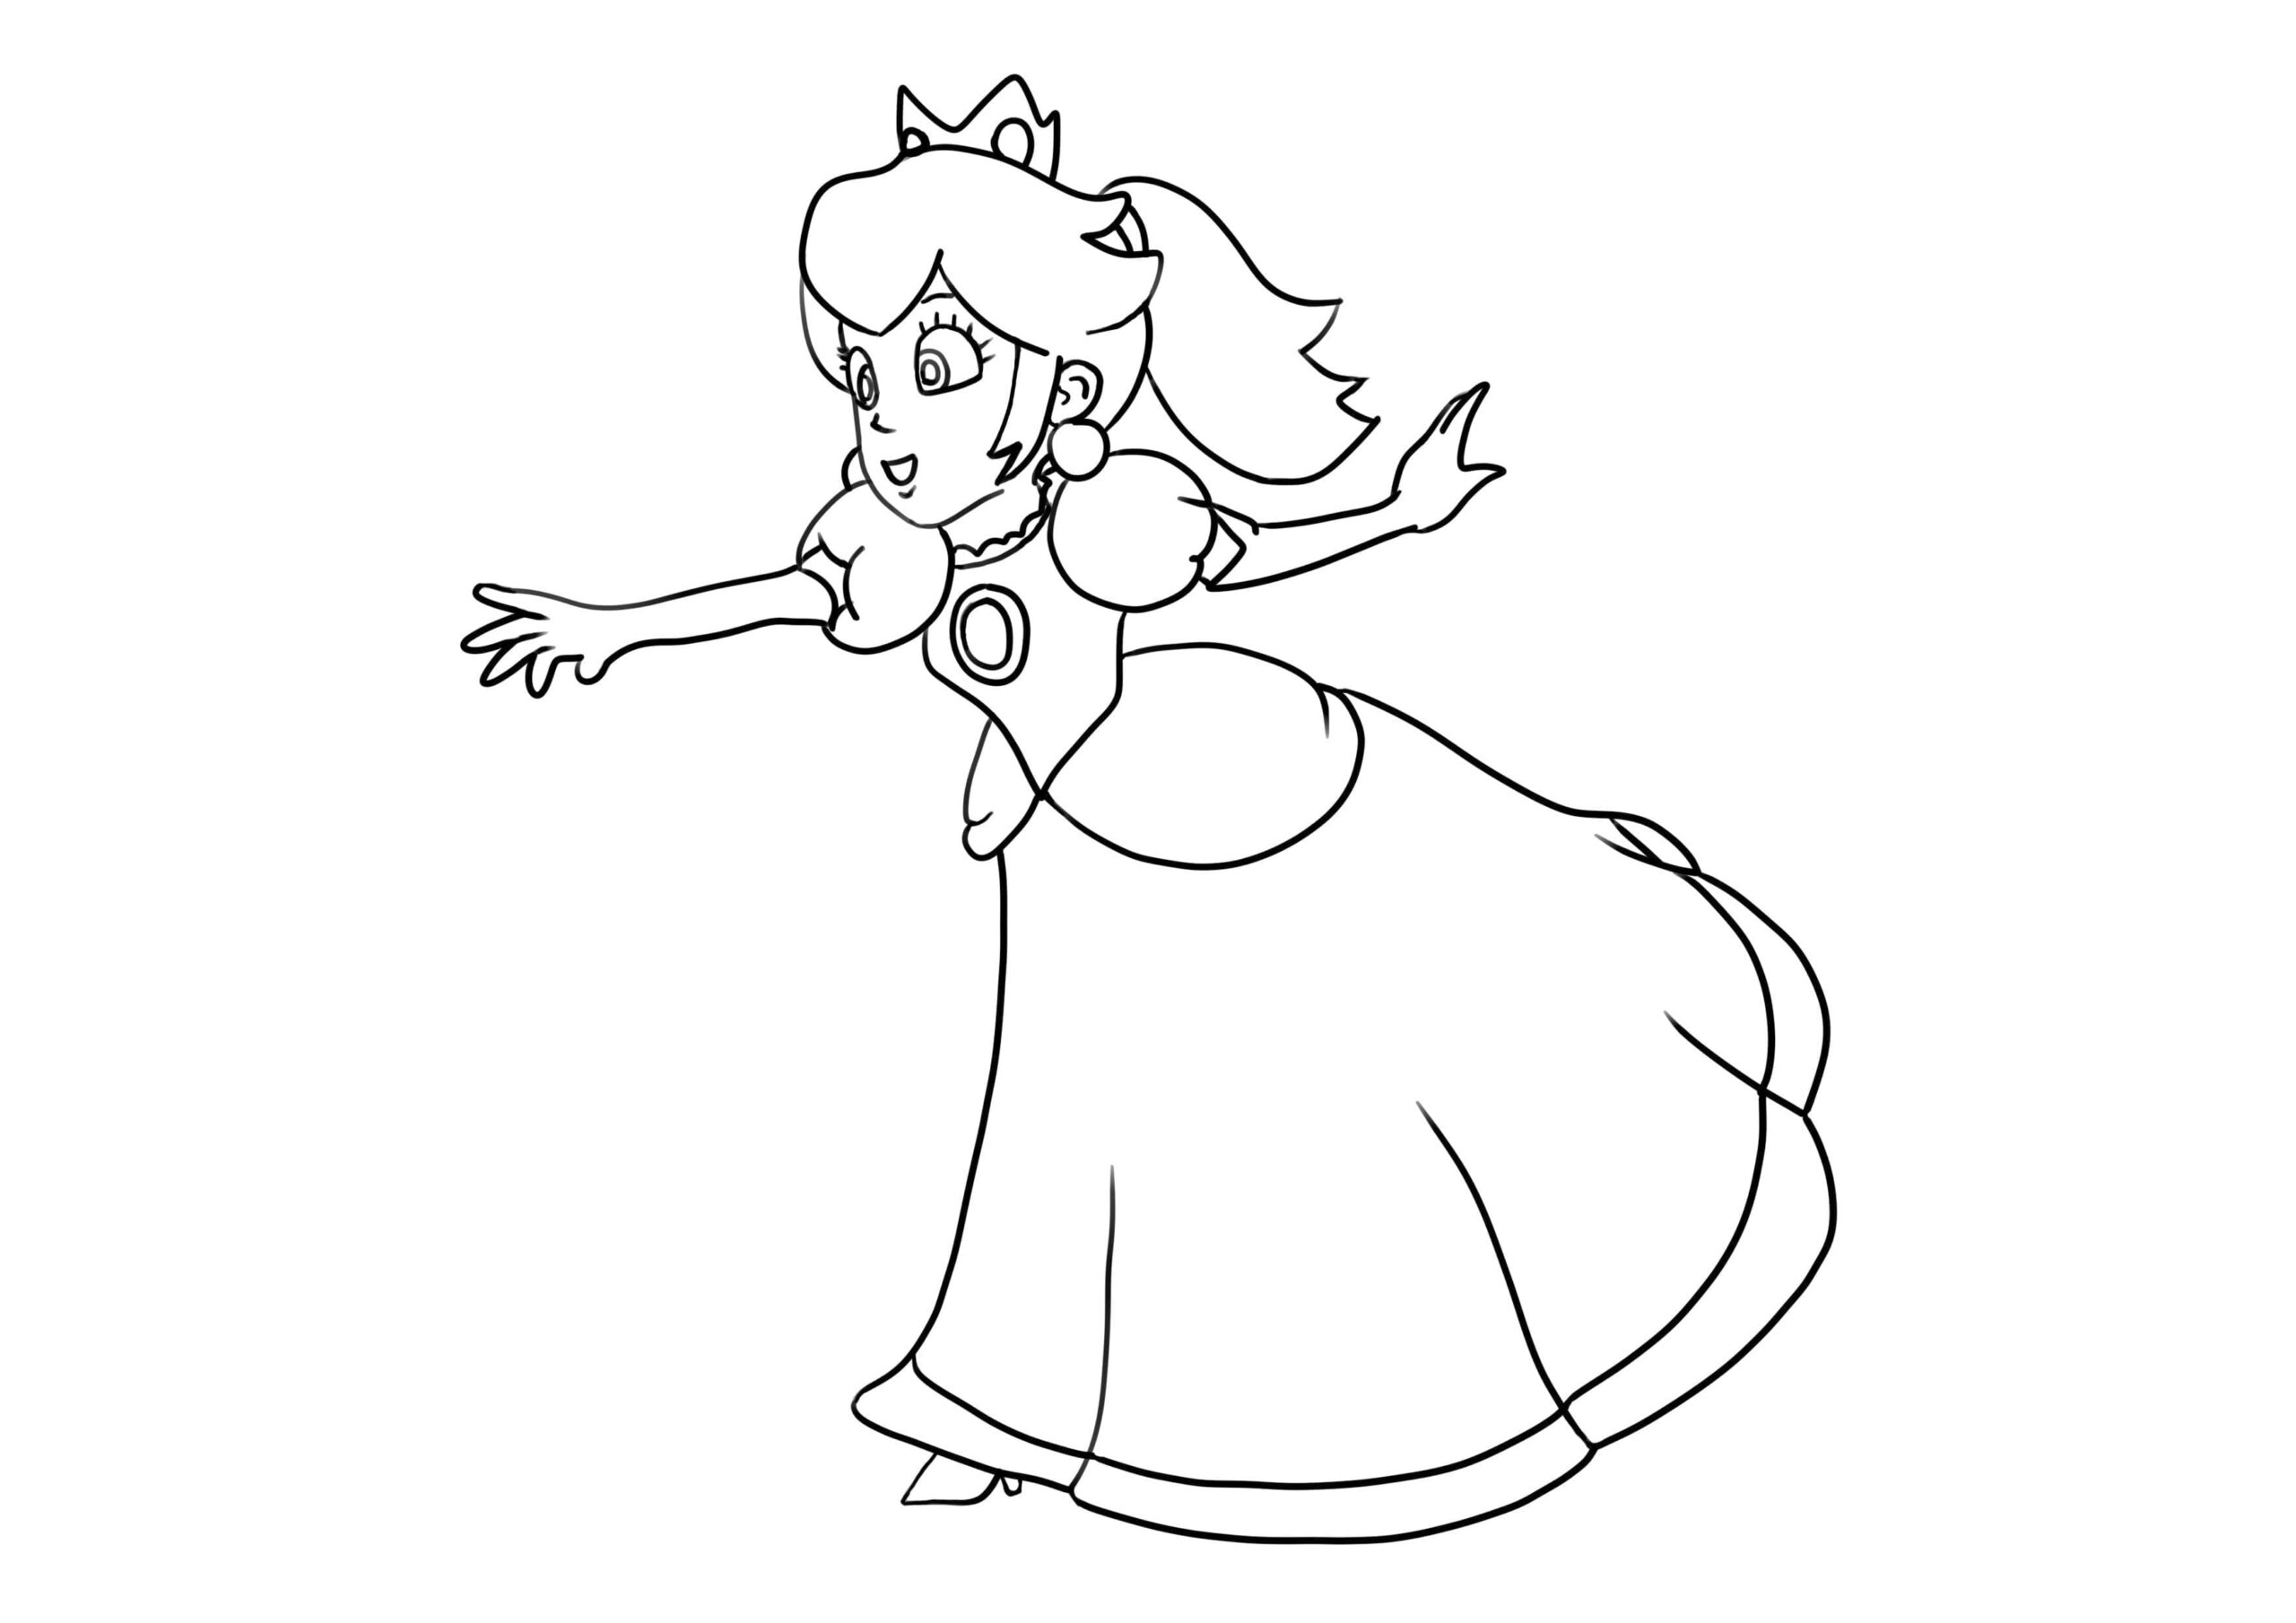 Princesse Peach de Mario coloring page